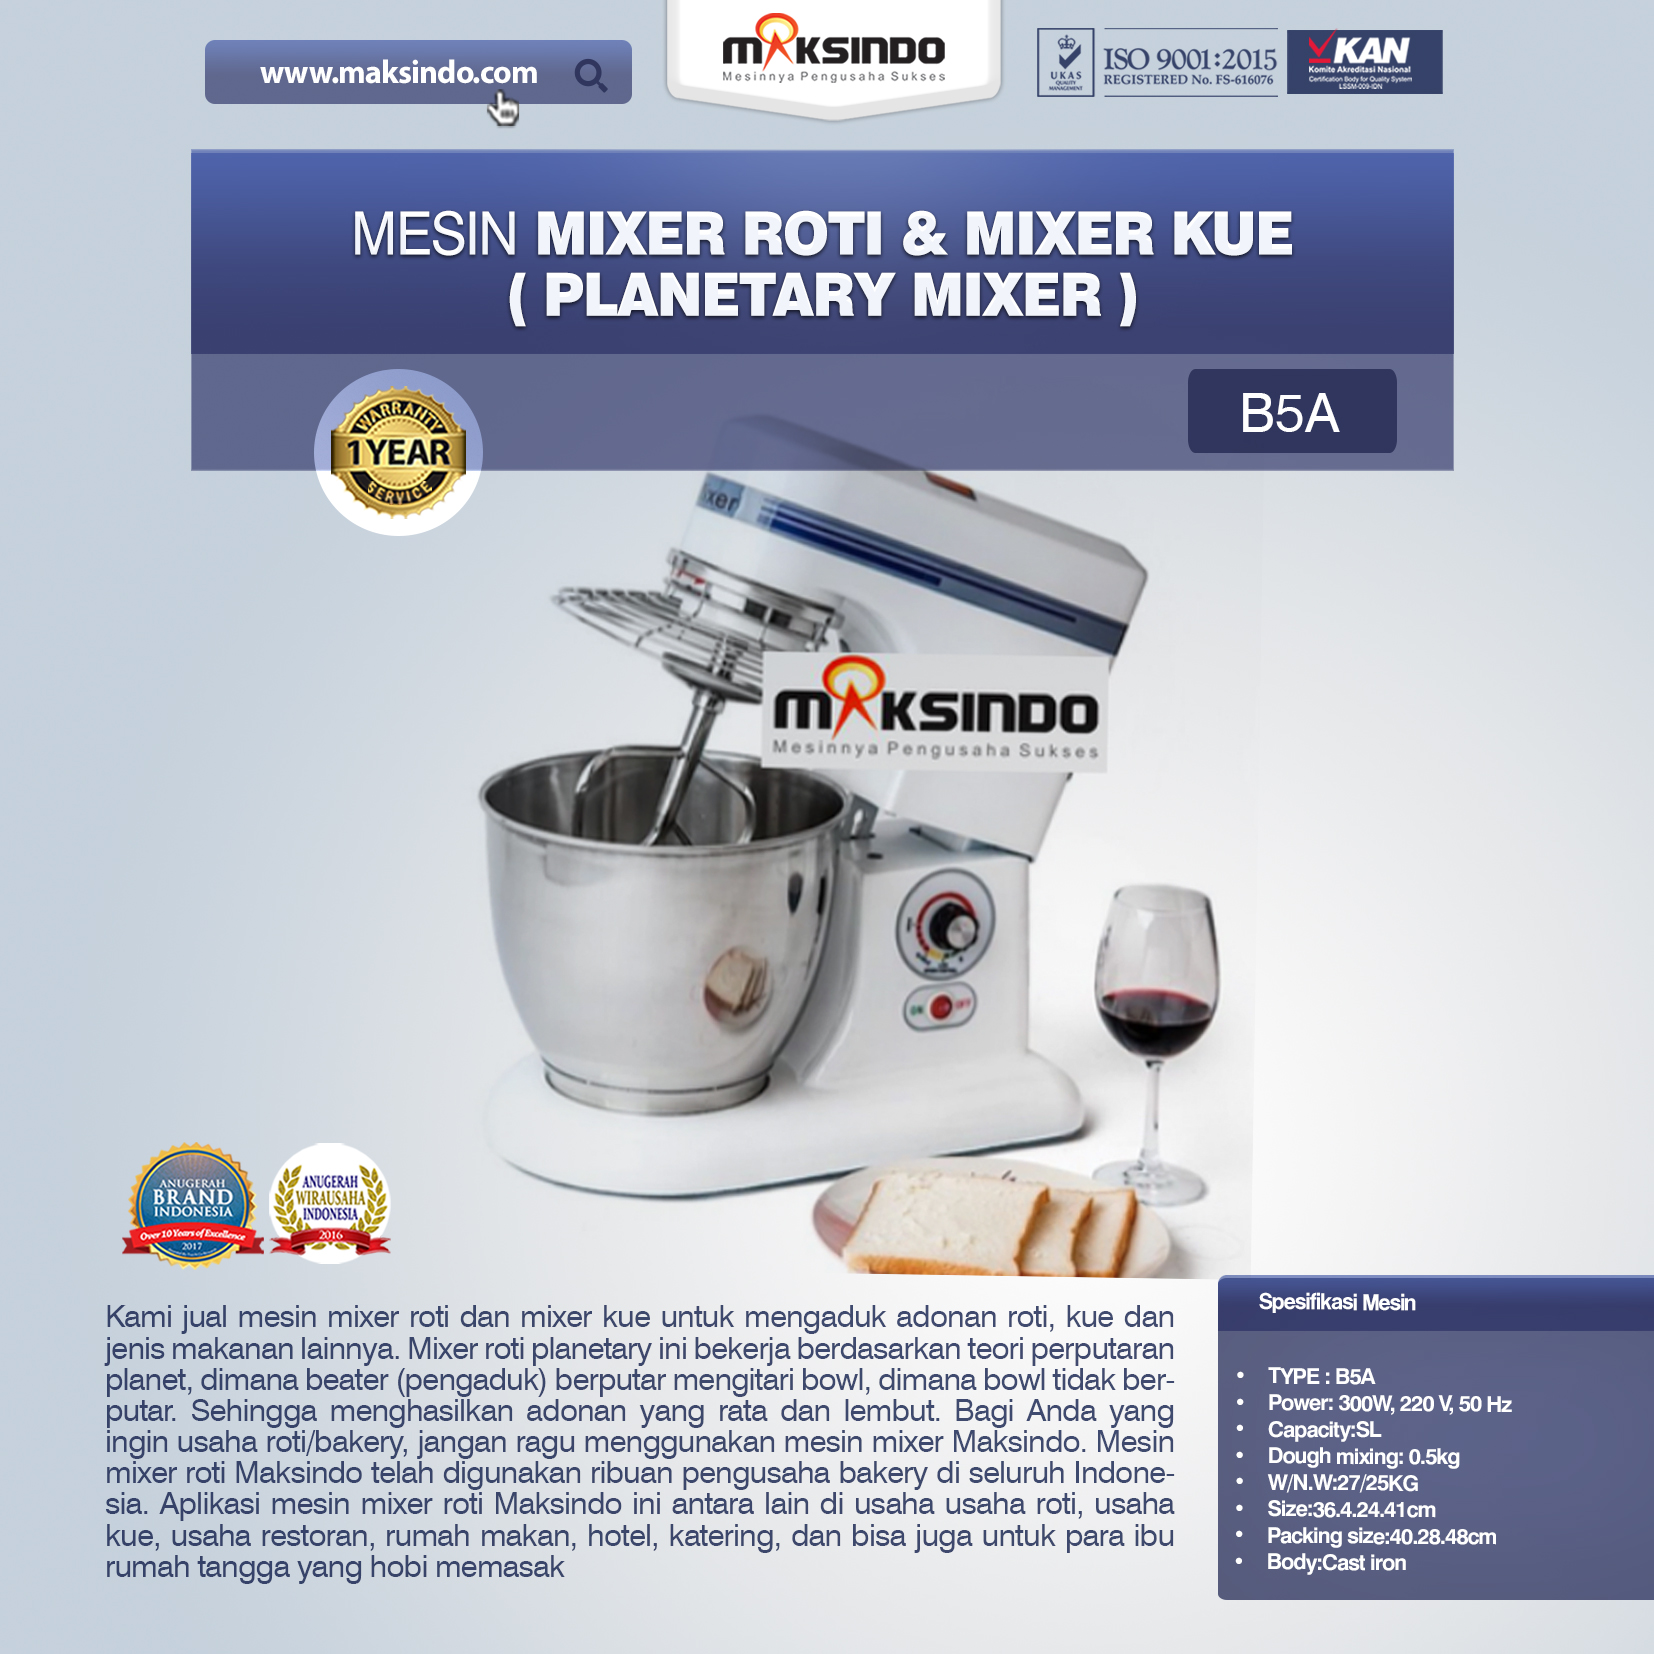 Jual Mesin Mixer Roti dan Kue Model Planetary di Malang